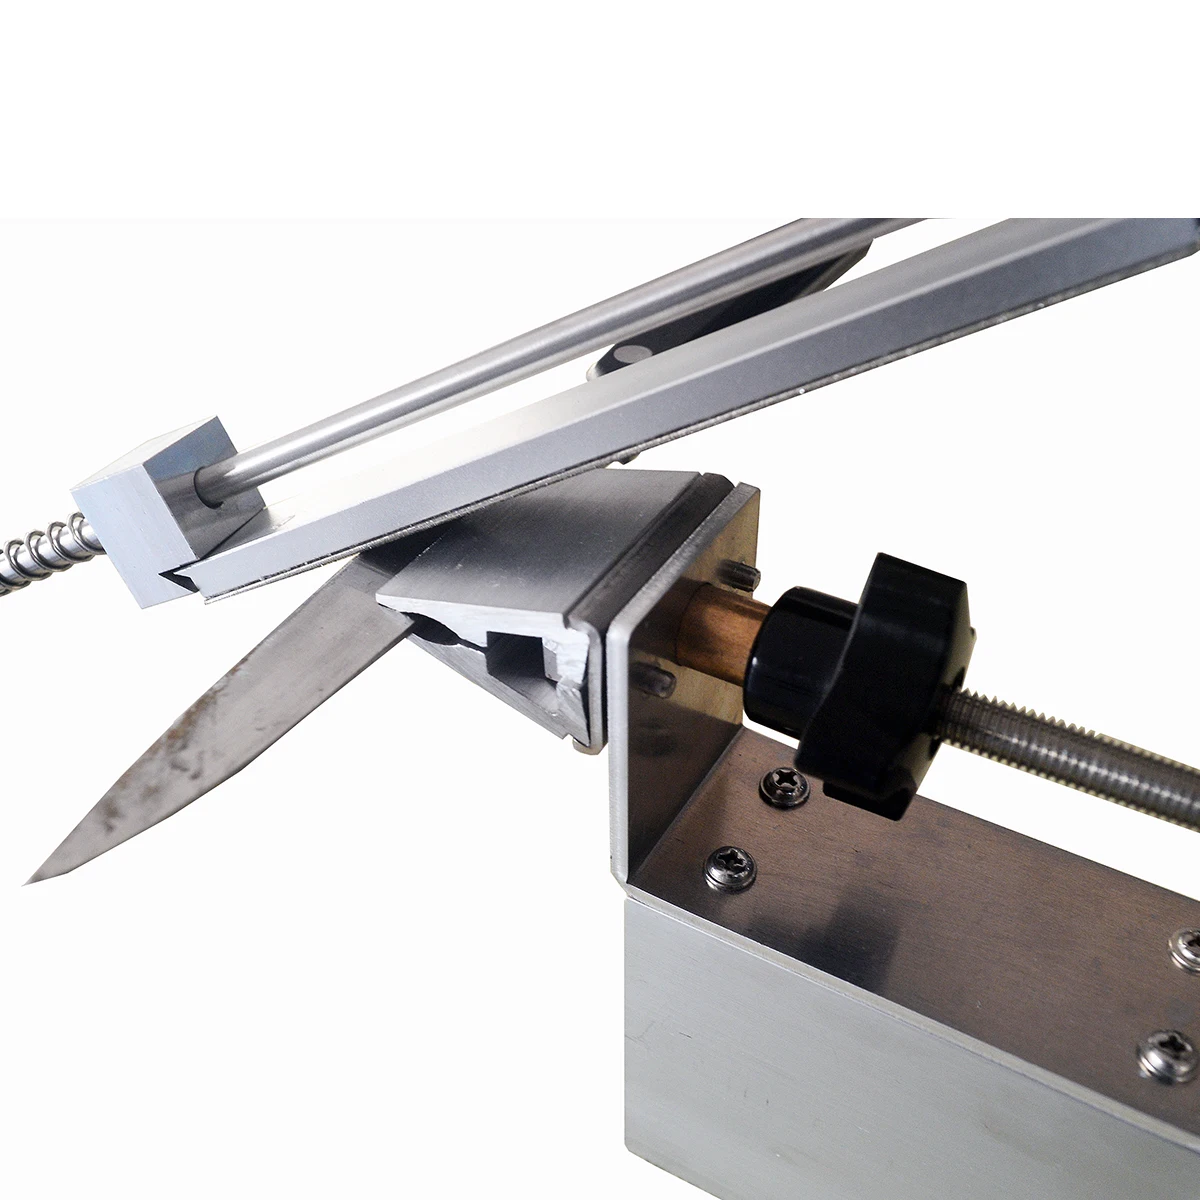 KME точилка для ножей Система шлифовальный инструмент DQK edge Pro шлифовальный станок Алмазная точилка точильный камень Ruixin pro